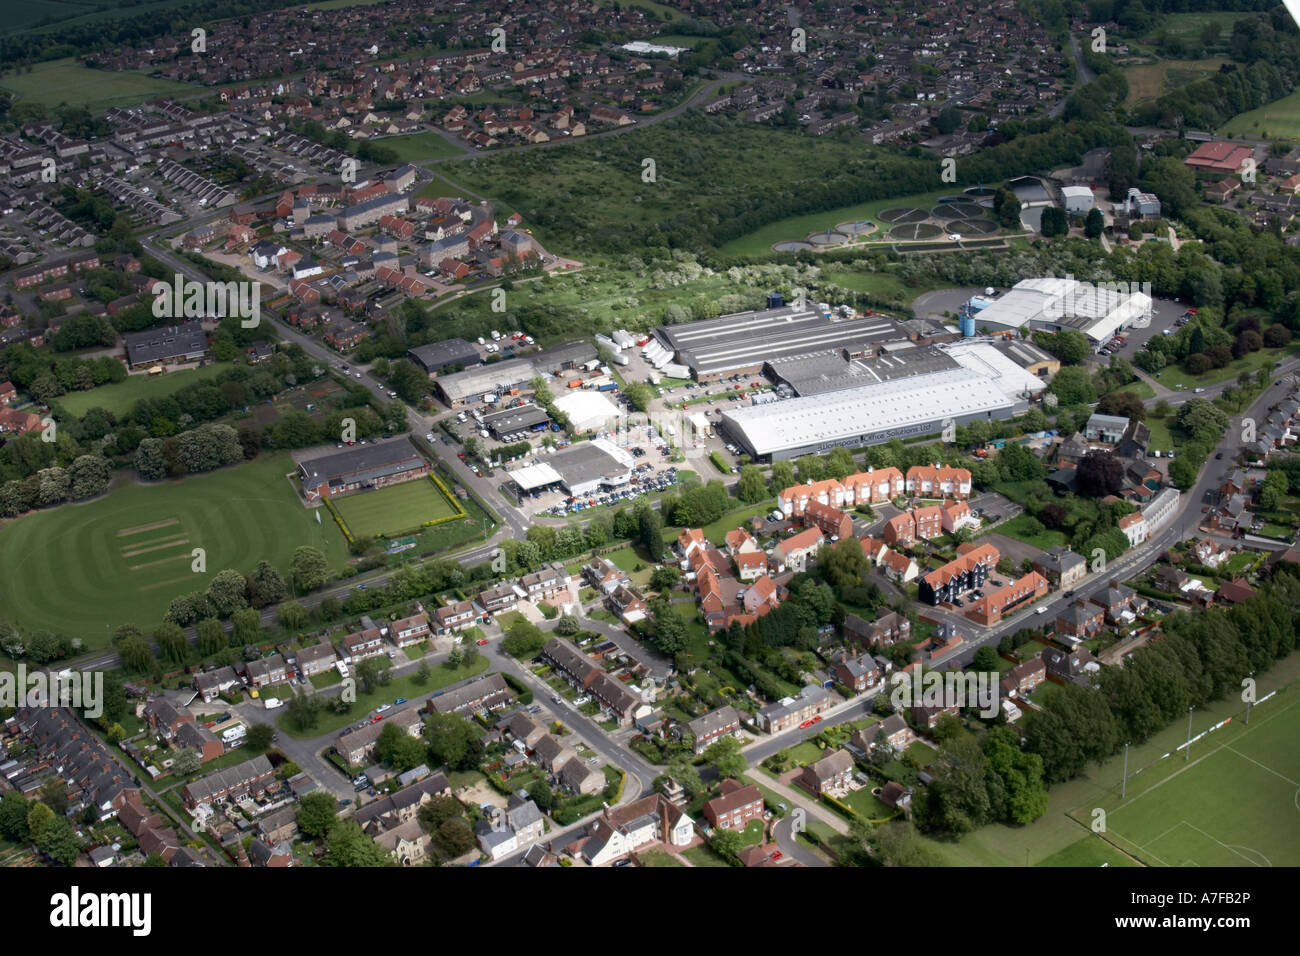 Vue aérienne oblique de haut niveau à l'est des bâtiments résidentiels industrial estate water works terrain de sport Haverhill, Suffolk CB9 Banque D'Images